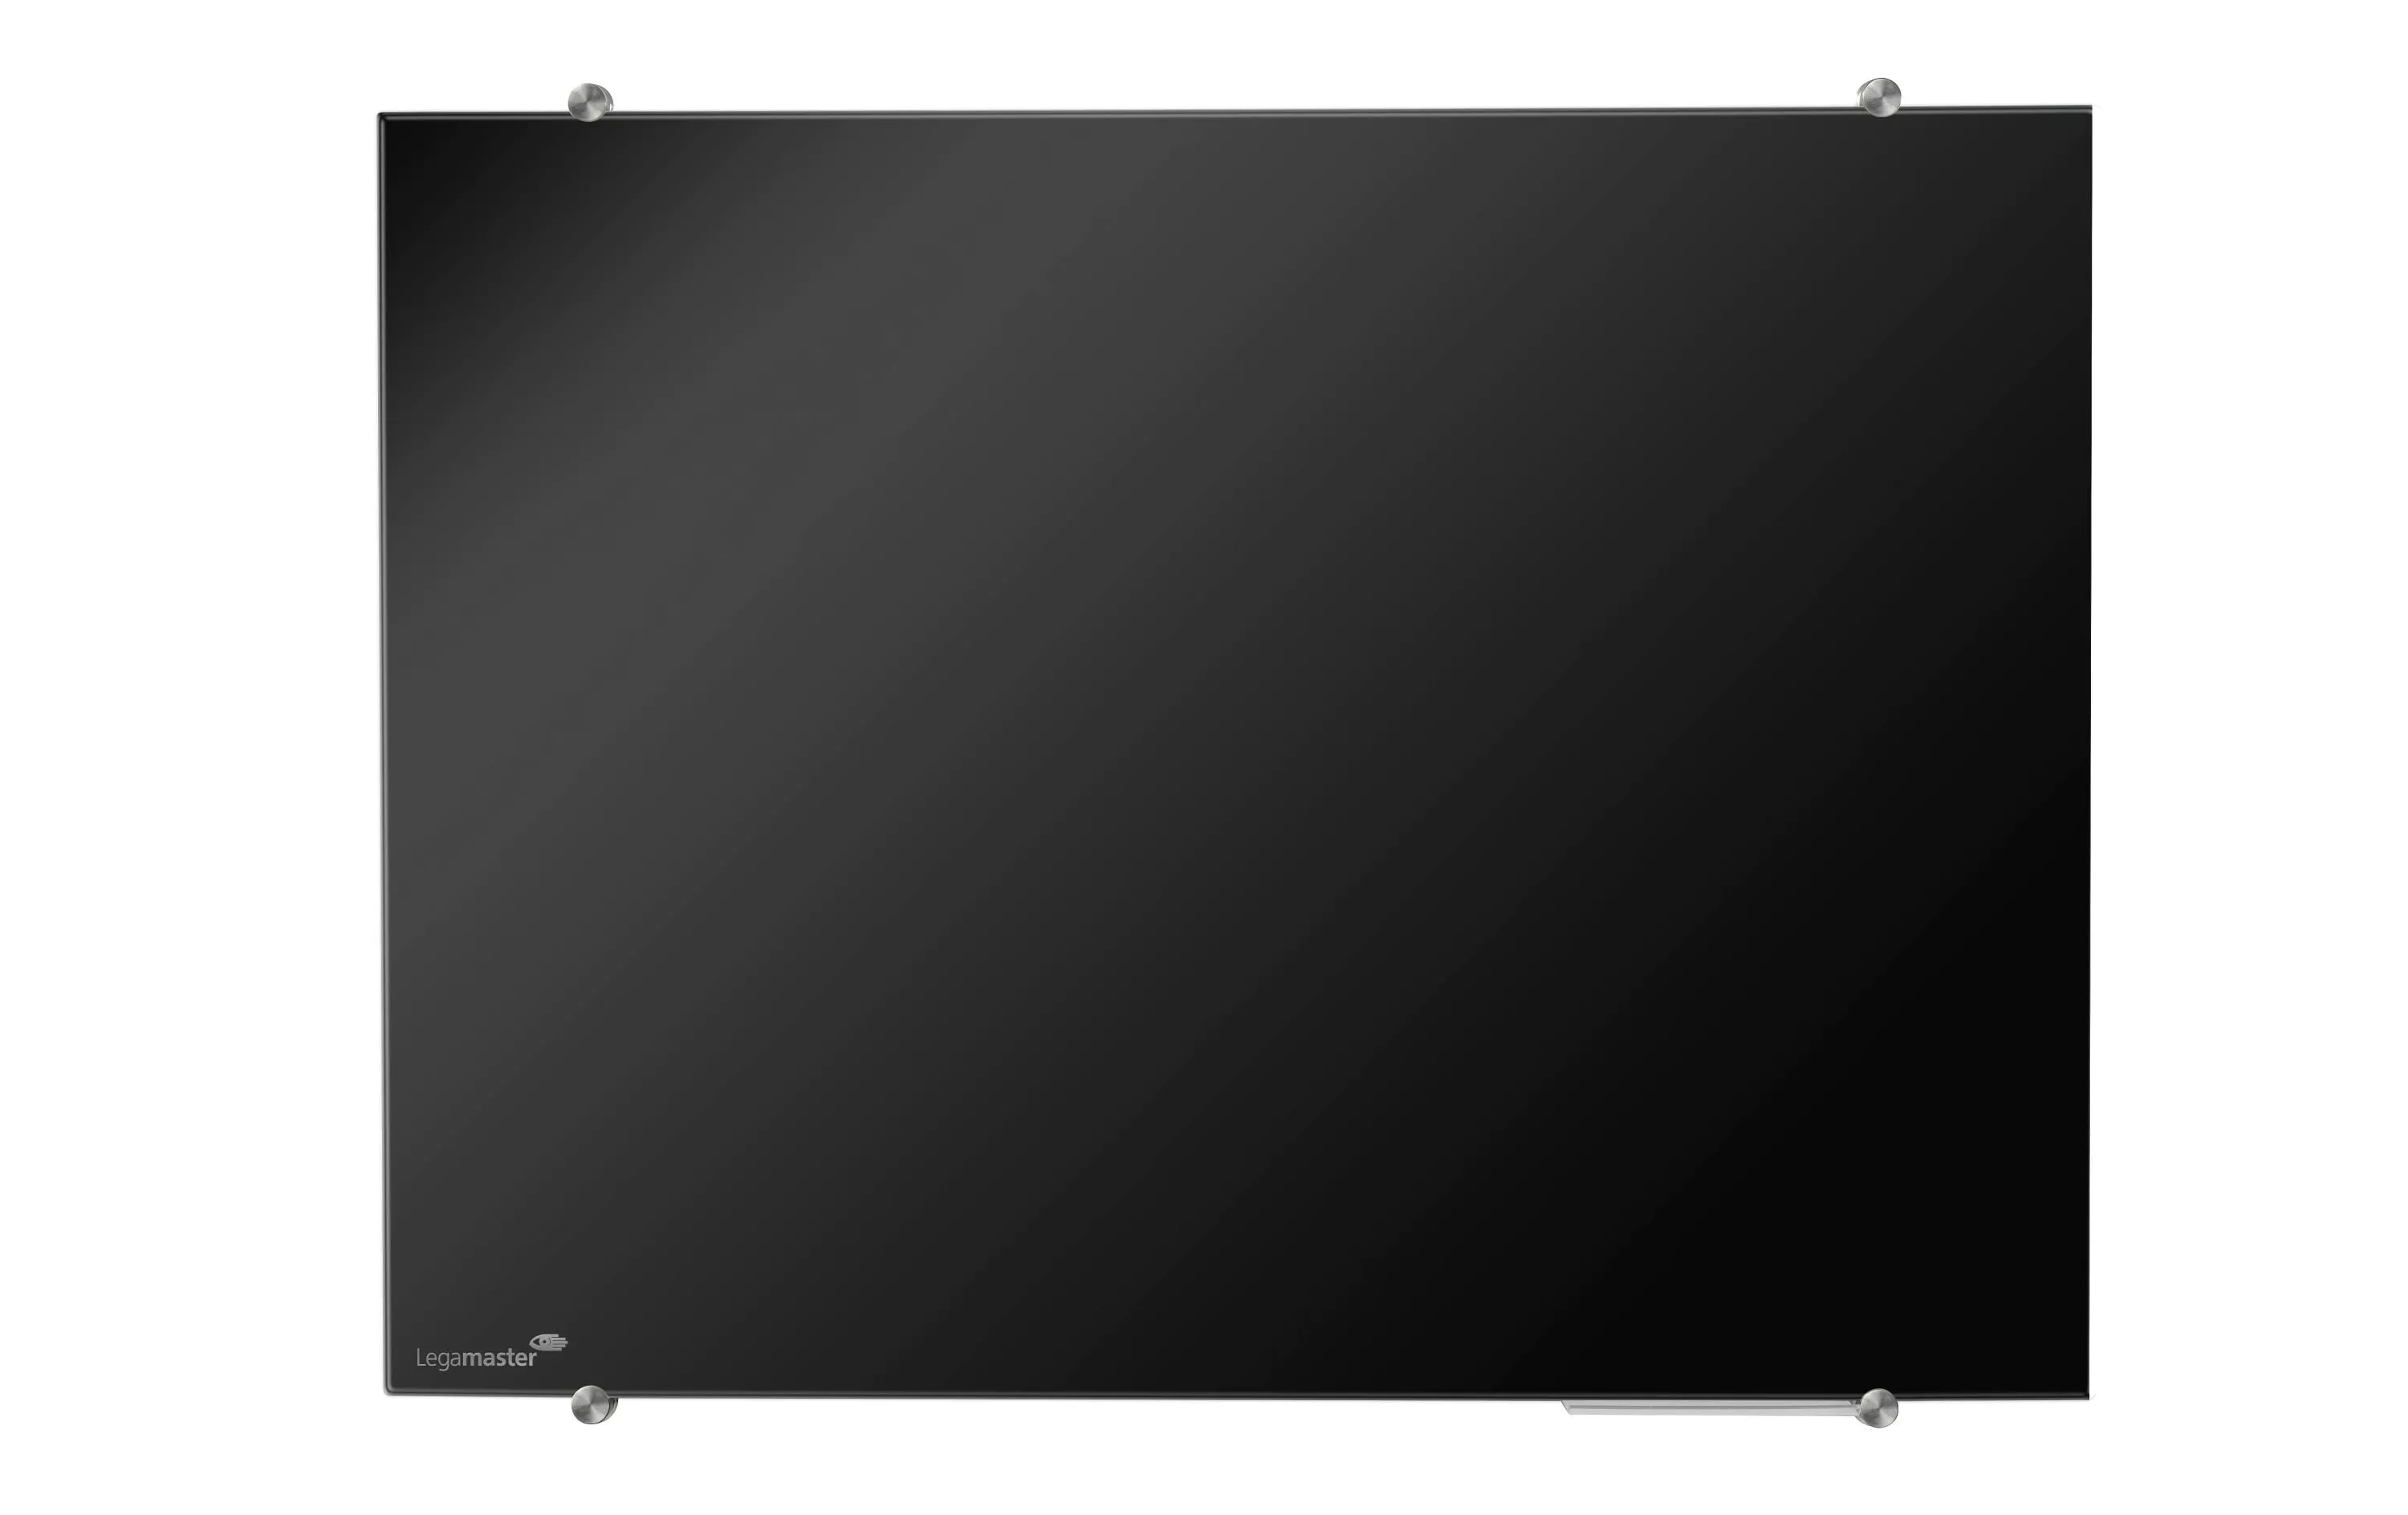 Magnethaftendes Glassboard Colour 100 cm x 150 cm, Schwarz